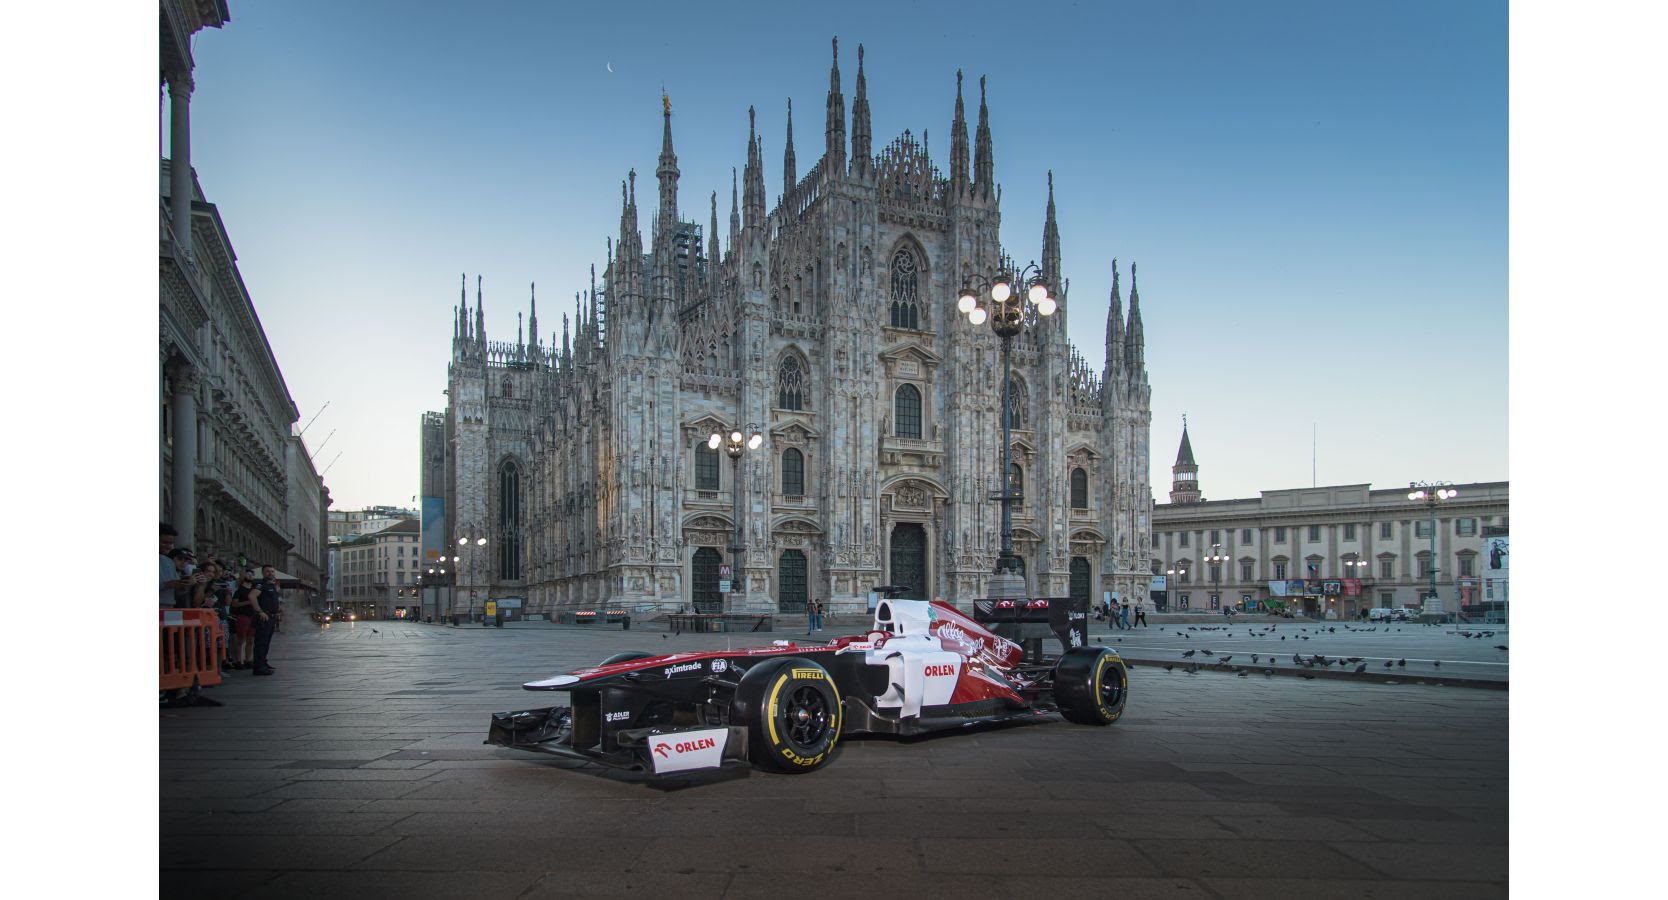 Alfa Romeo F1 team racecar at Piazza Duomo in Milan